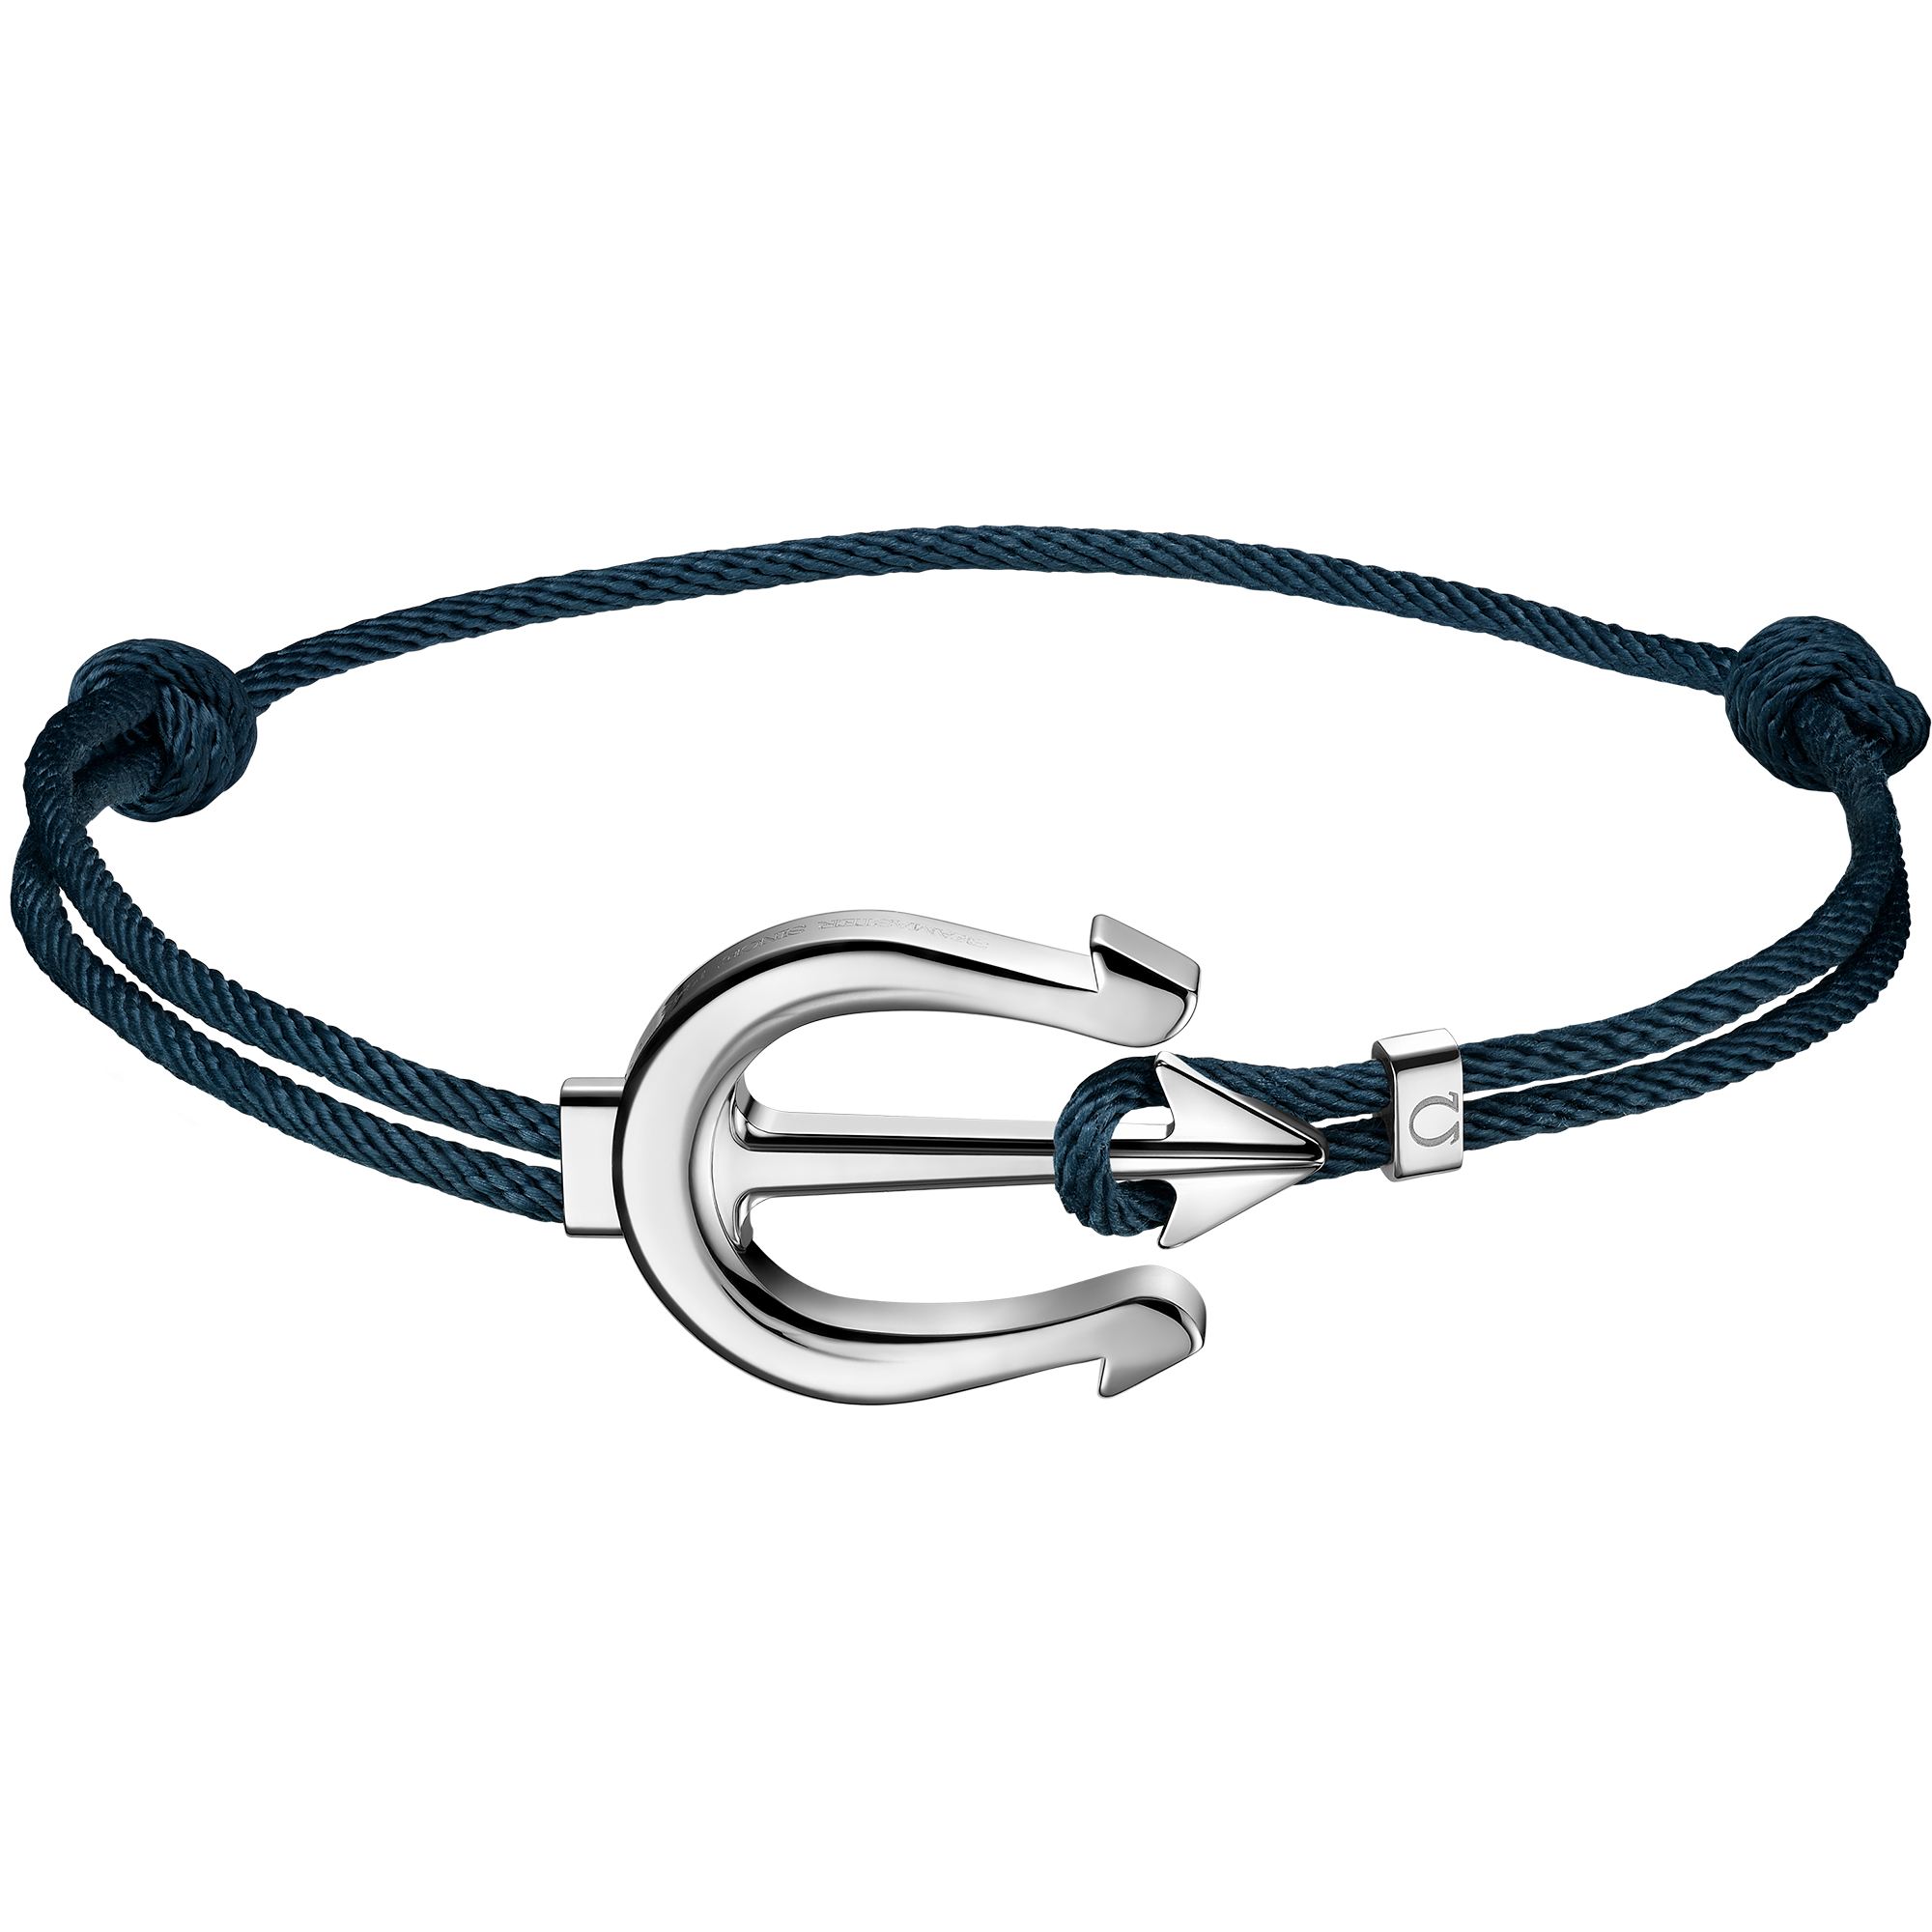 Buy El Regalo Golden Trident Rudraksha Bracelet for Men- Brass Trident  Charm Chain Bracelet- Shiva Trishool Bracelet for Boys & Men at Amazon.in